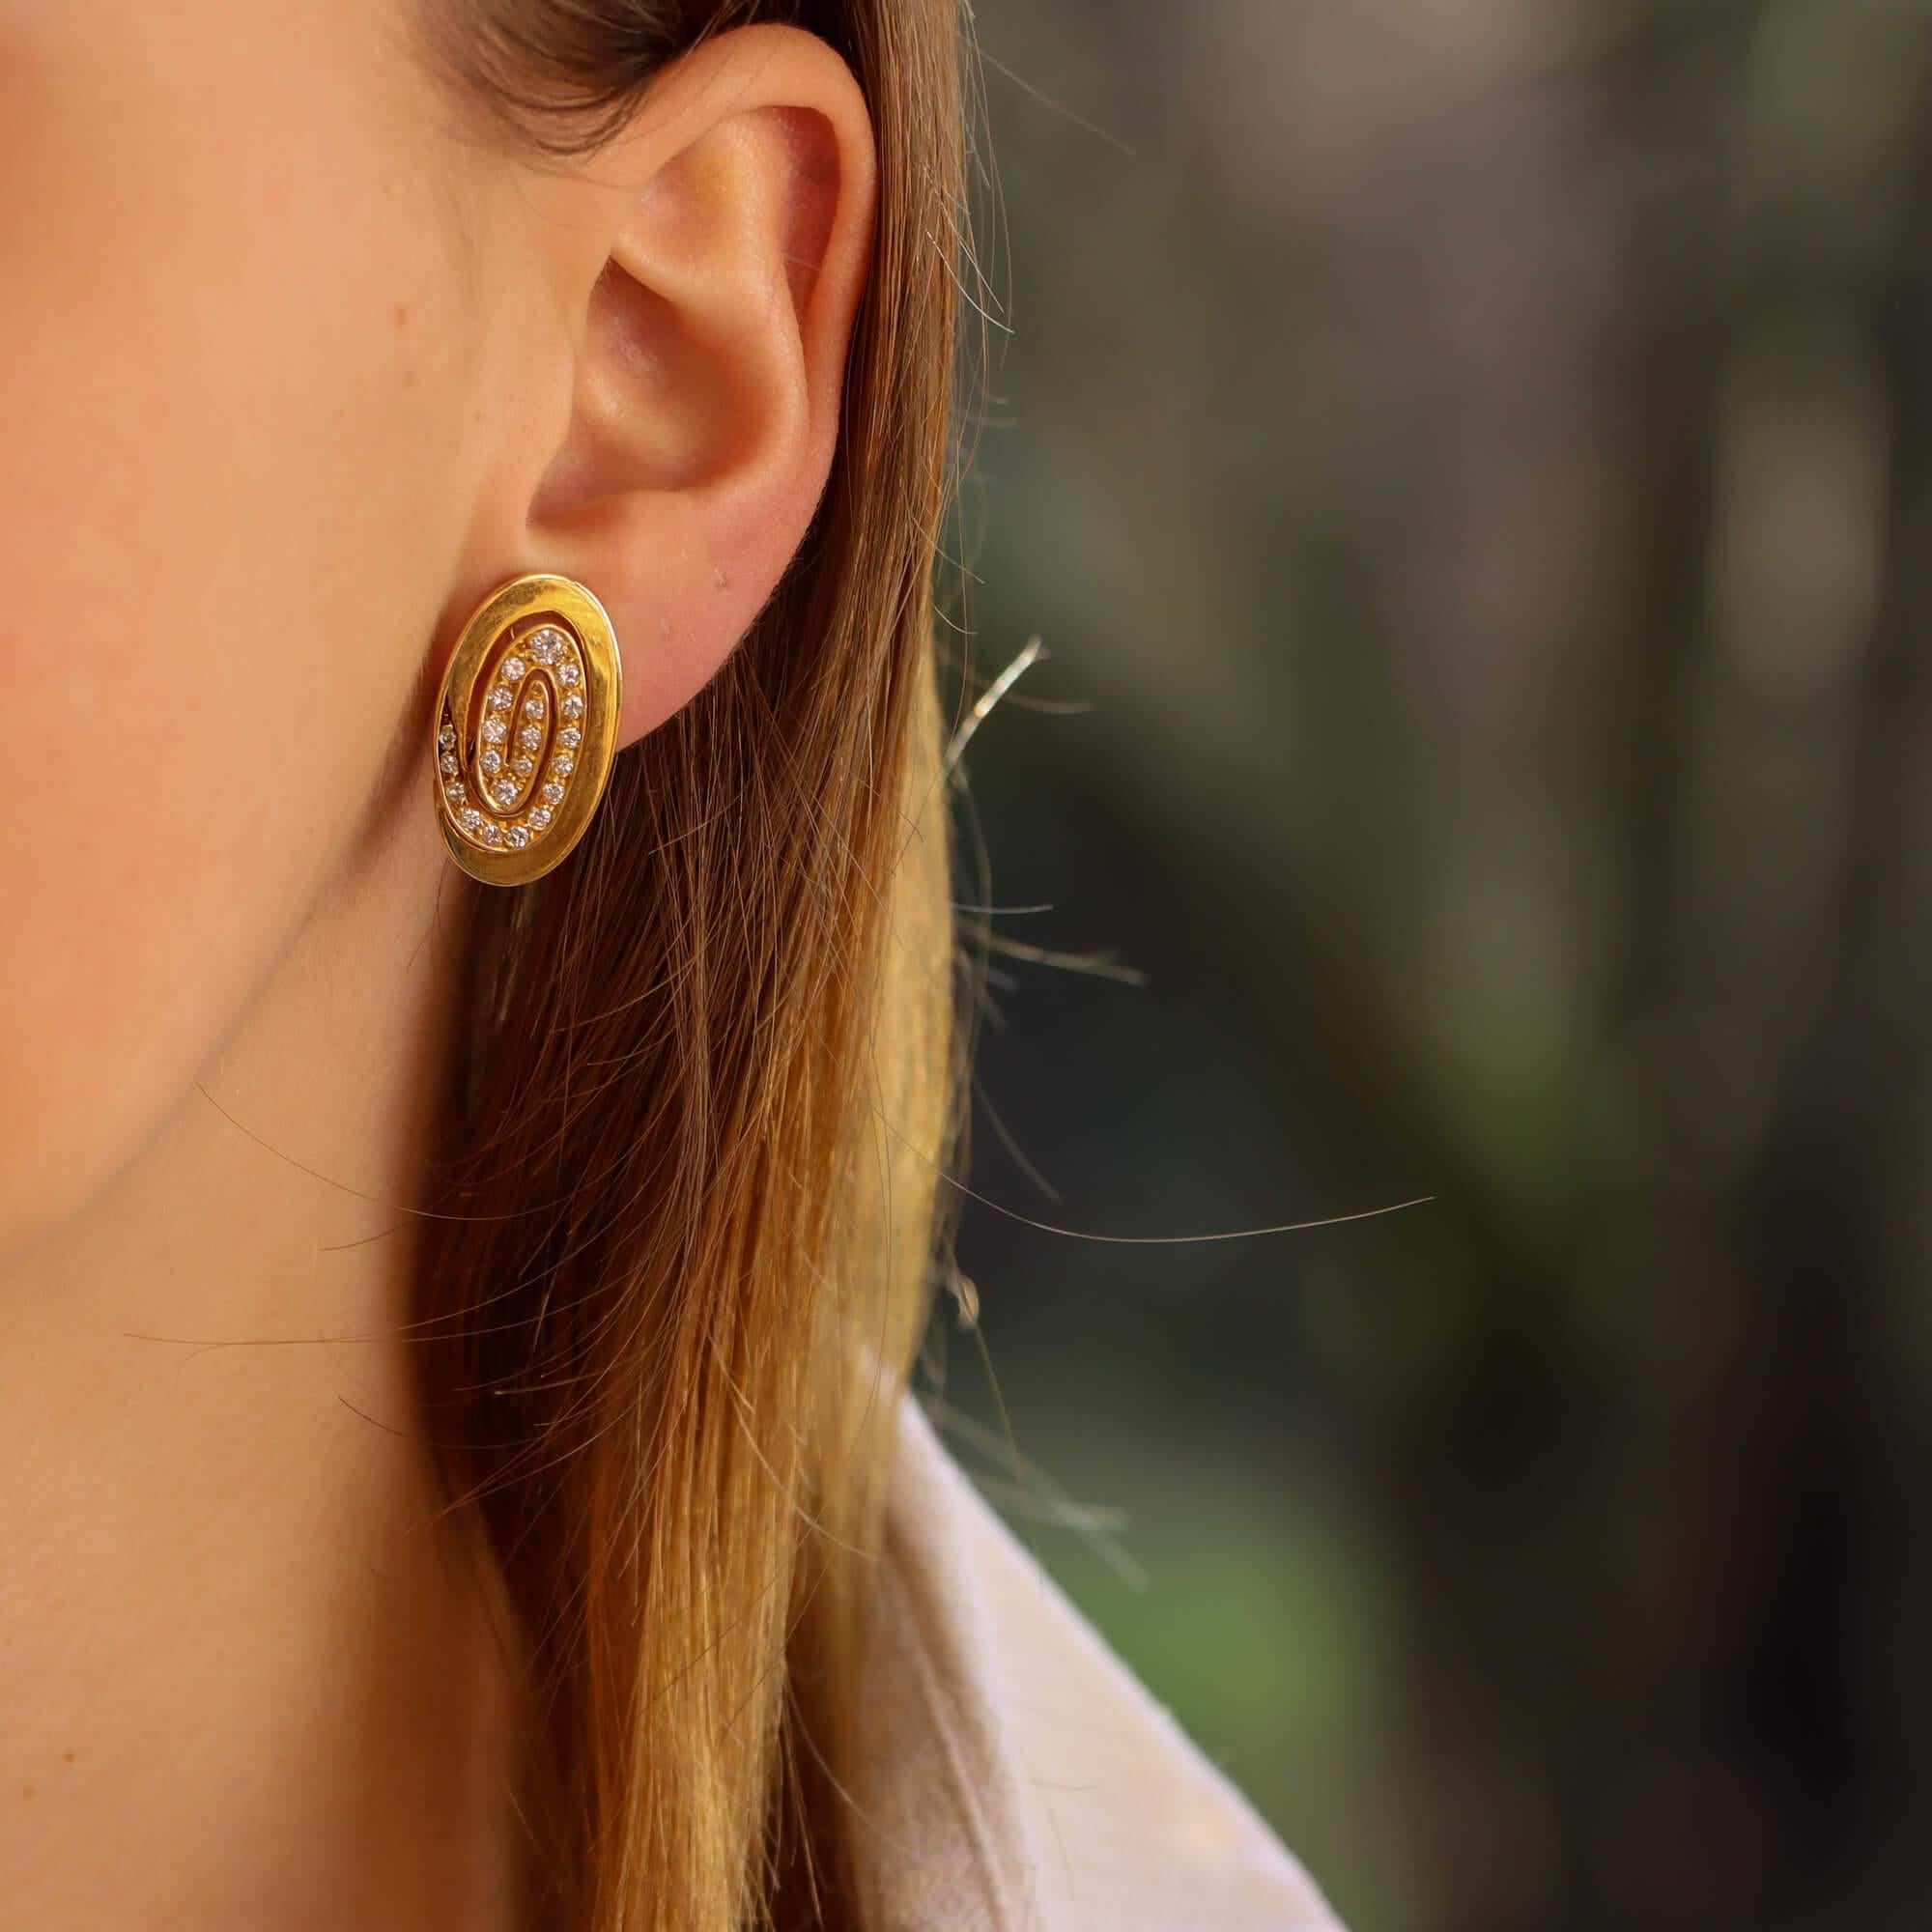 Ein schönes Paar Bvlgari Diamant Wirbel Clip auf Ohrringe in 18k Gelbgold gesetzt.

In der Mitte jedes Ohrrings befindet sich ein eleganter Wirbel, der durchgehend mit runden Diamanten im Brillantschliff in verschiedenen Größen besetzt ist. Dieser